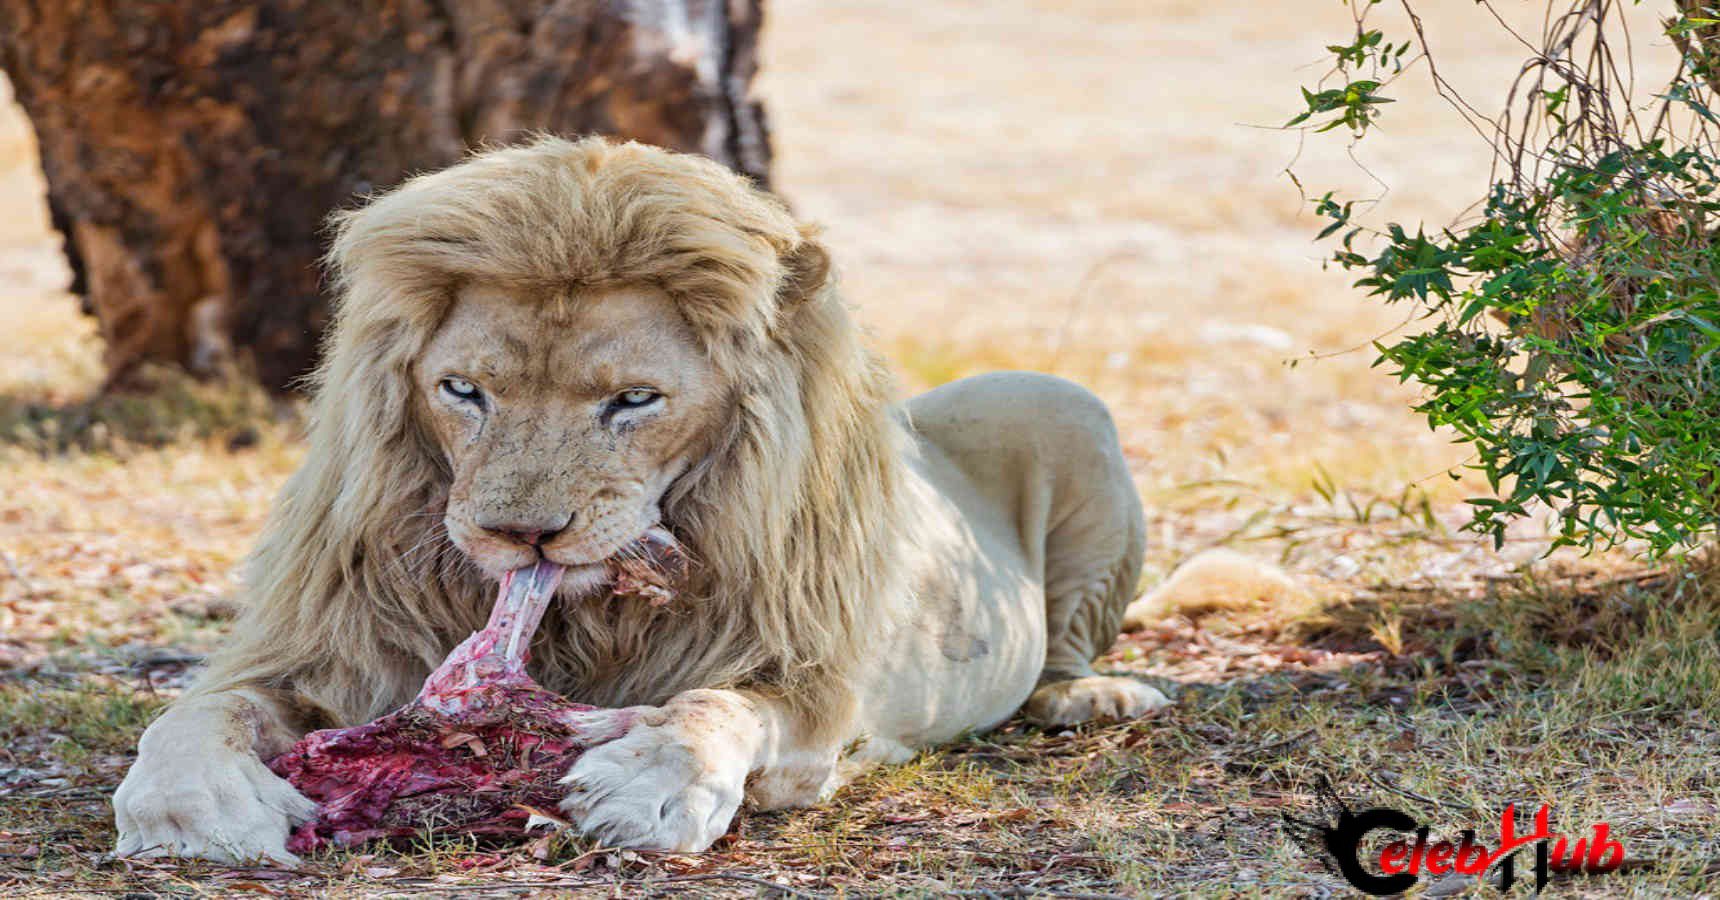 Lion eat meat 